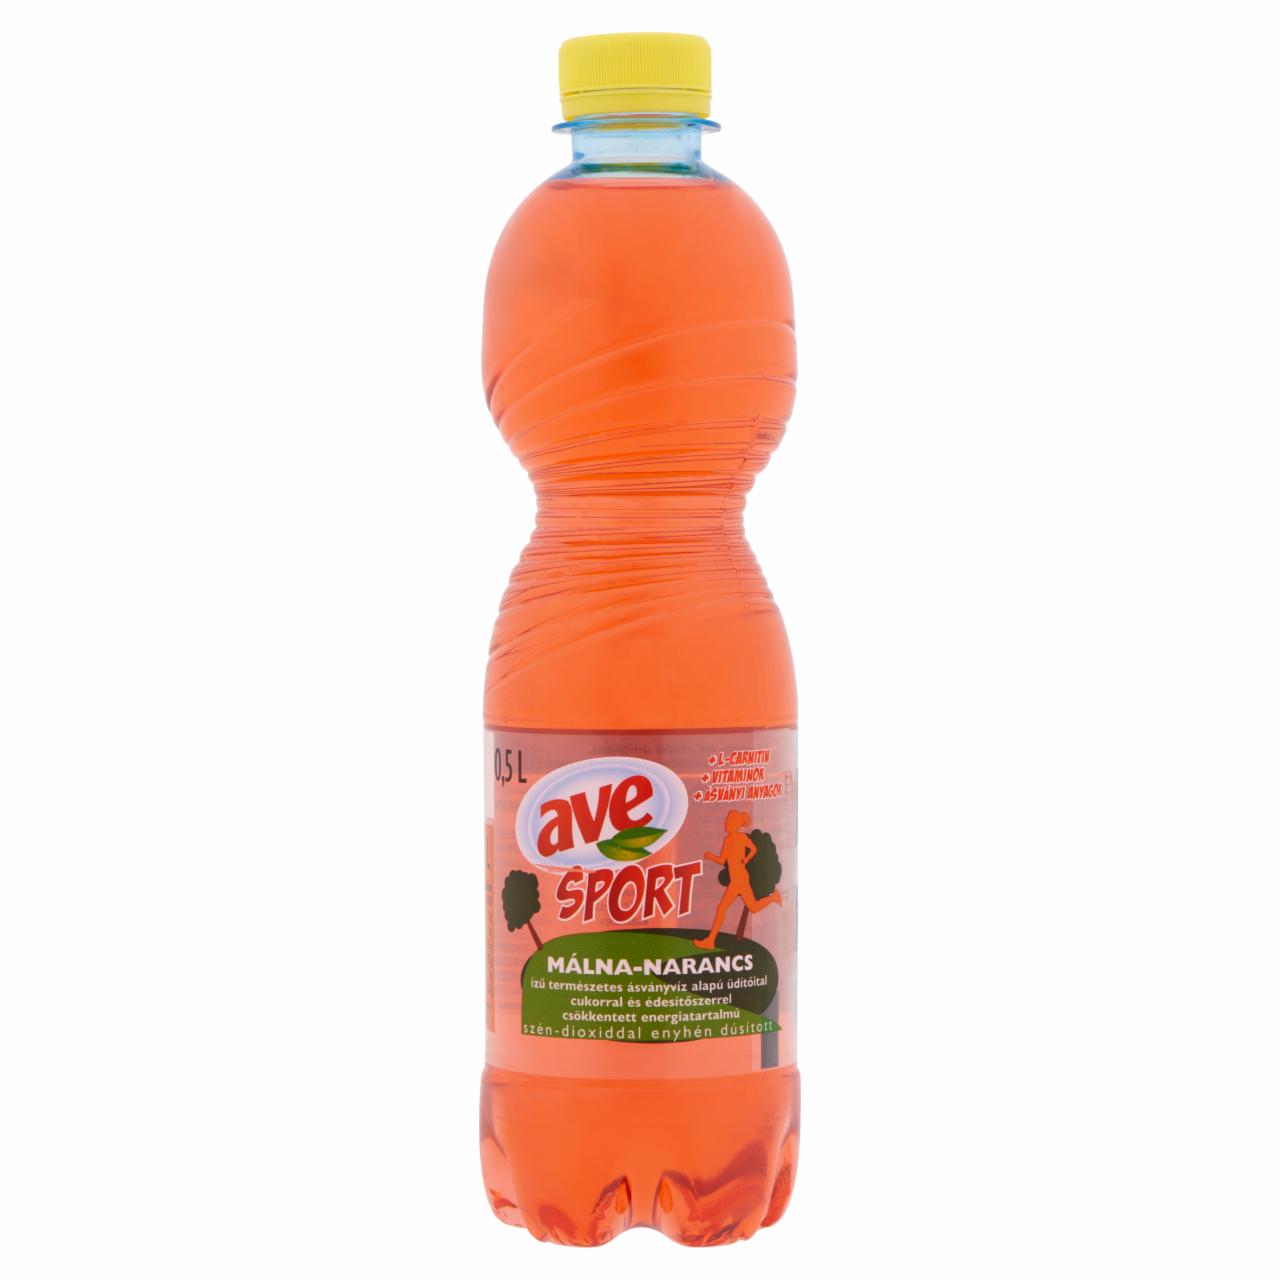 Képek - Ave Sport málna-narancs ízű ásványvíz alapú üdítőital cukorral és édesítőszerrel 0,5 l